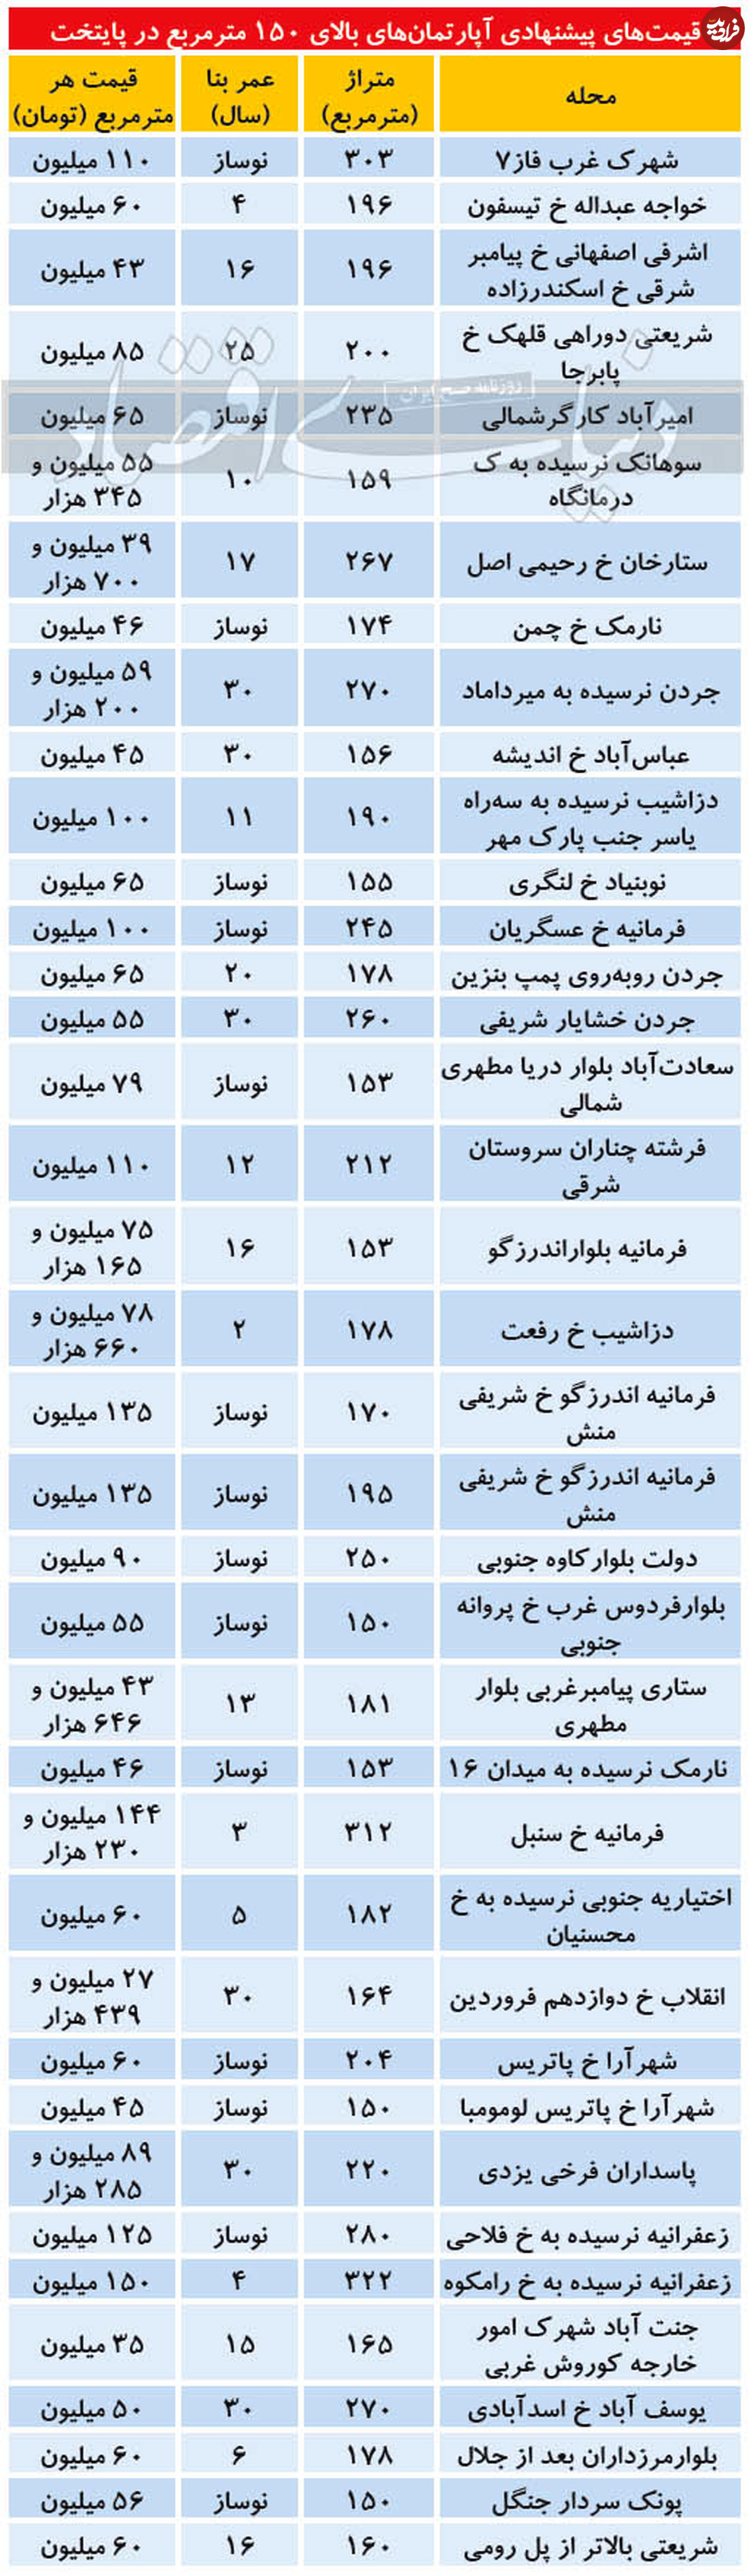 قیمت آپارتمان بالای ۱۵۰ مترمربع در تهران